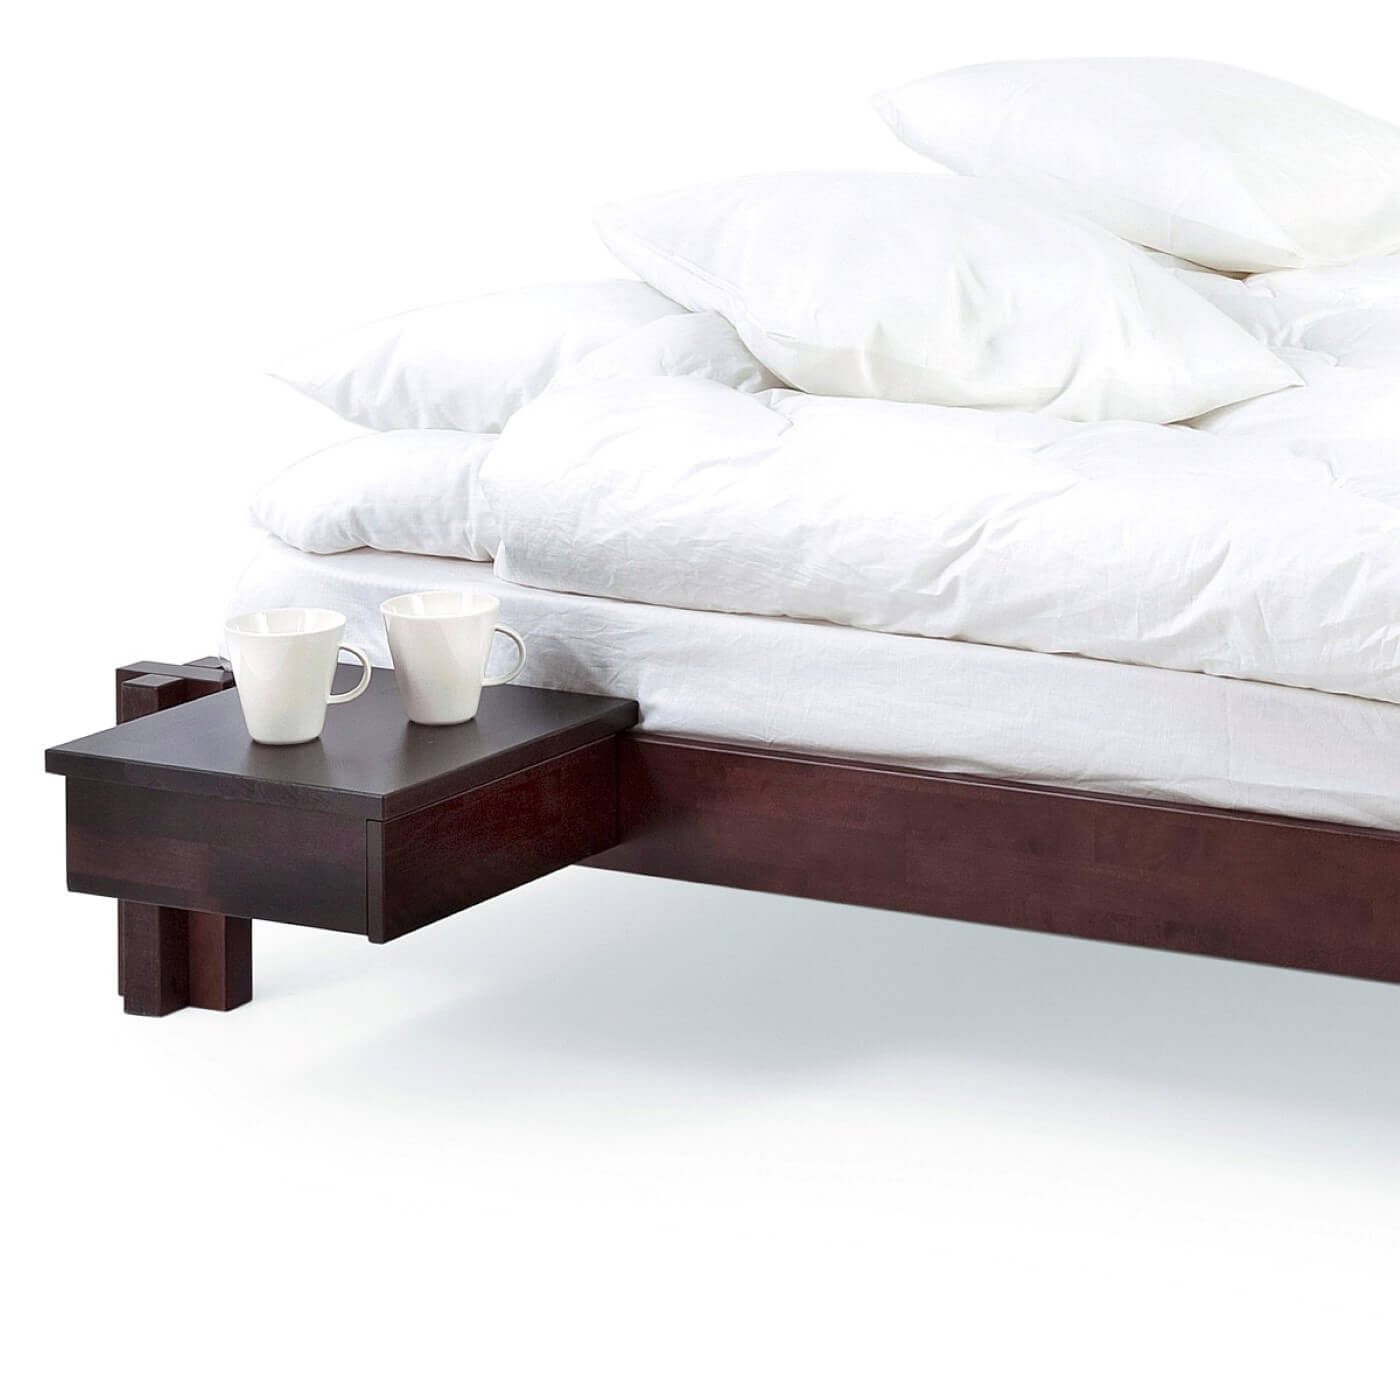 Niskie łóżko wenge MORI. Łóżko męskie nowoczesne widoczne we fragmencie z przywieszonym stolikiem nocnym w kolorze wenge z 2 białymi kubkami. Na łóżku z materacem leżąca biała pościel. Skandynawski design